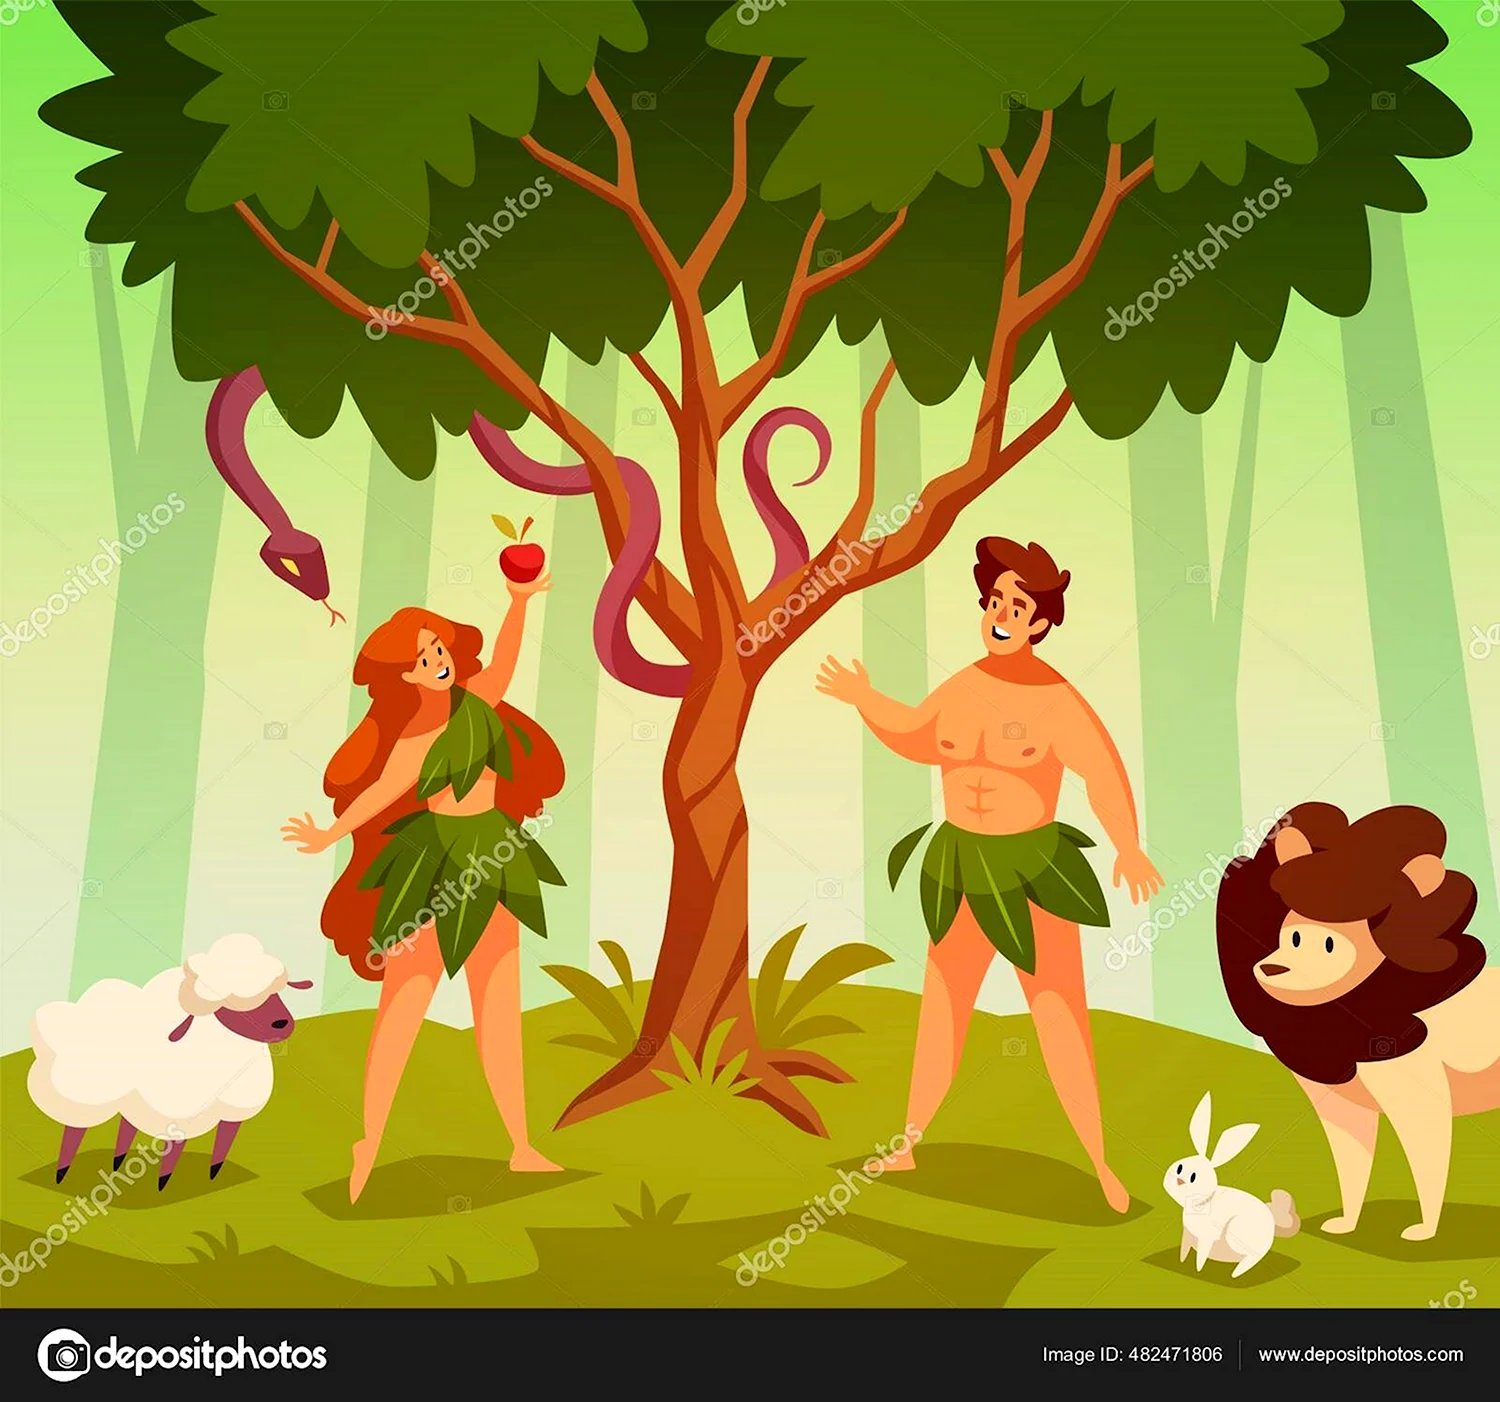 Адам и ева картинки для детей